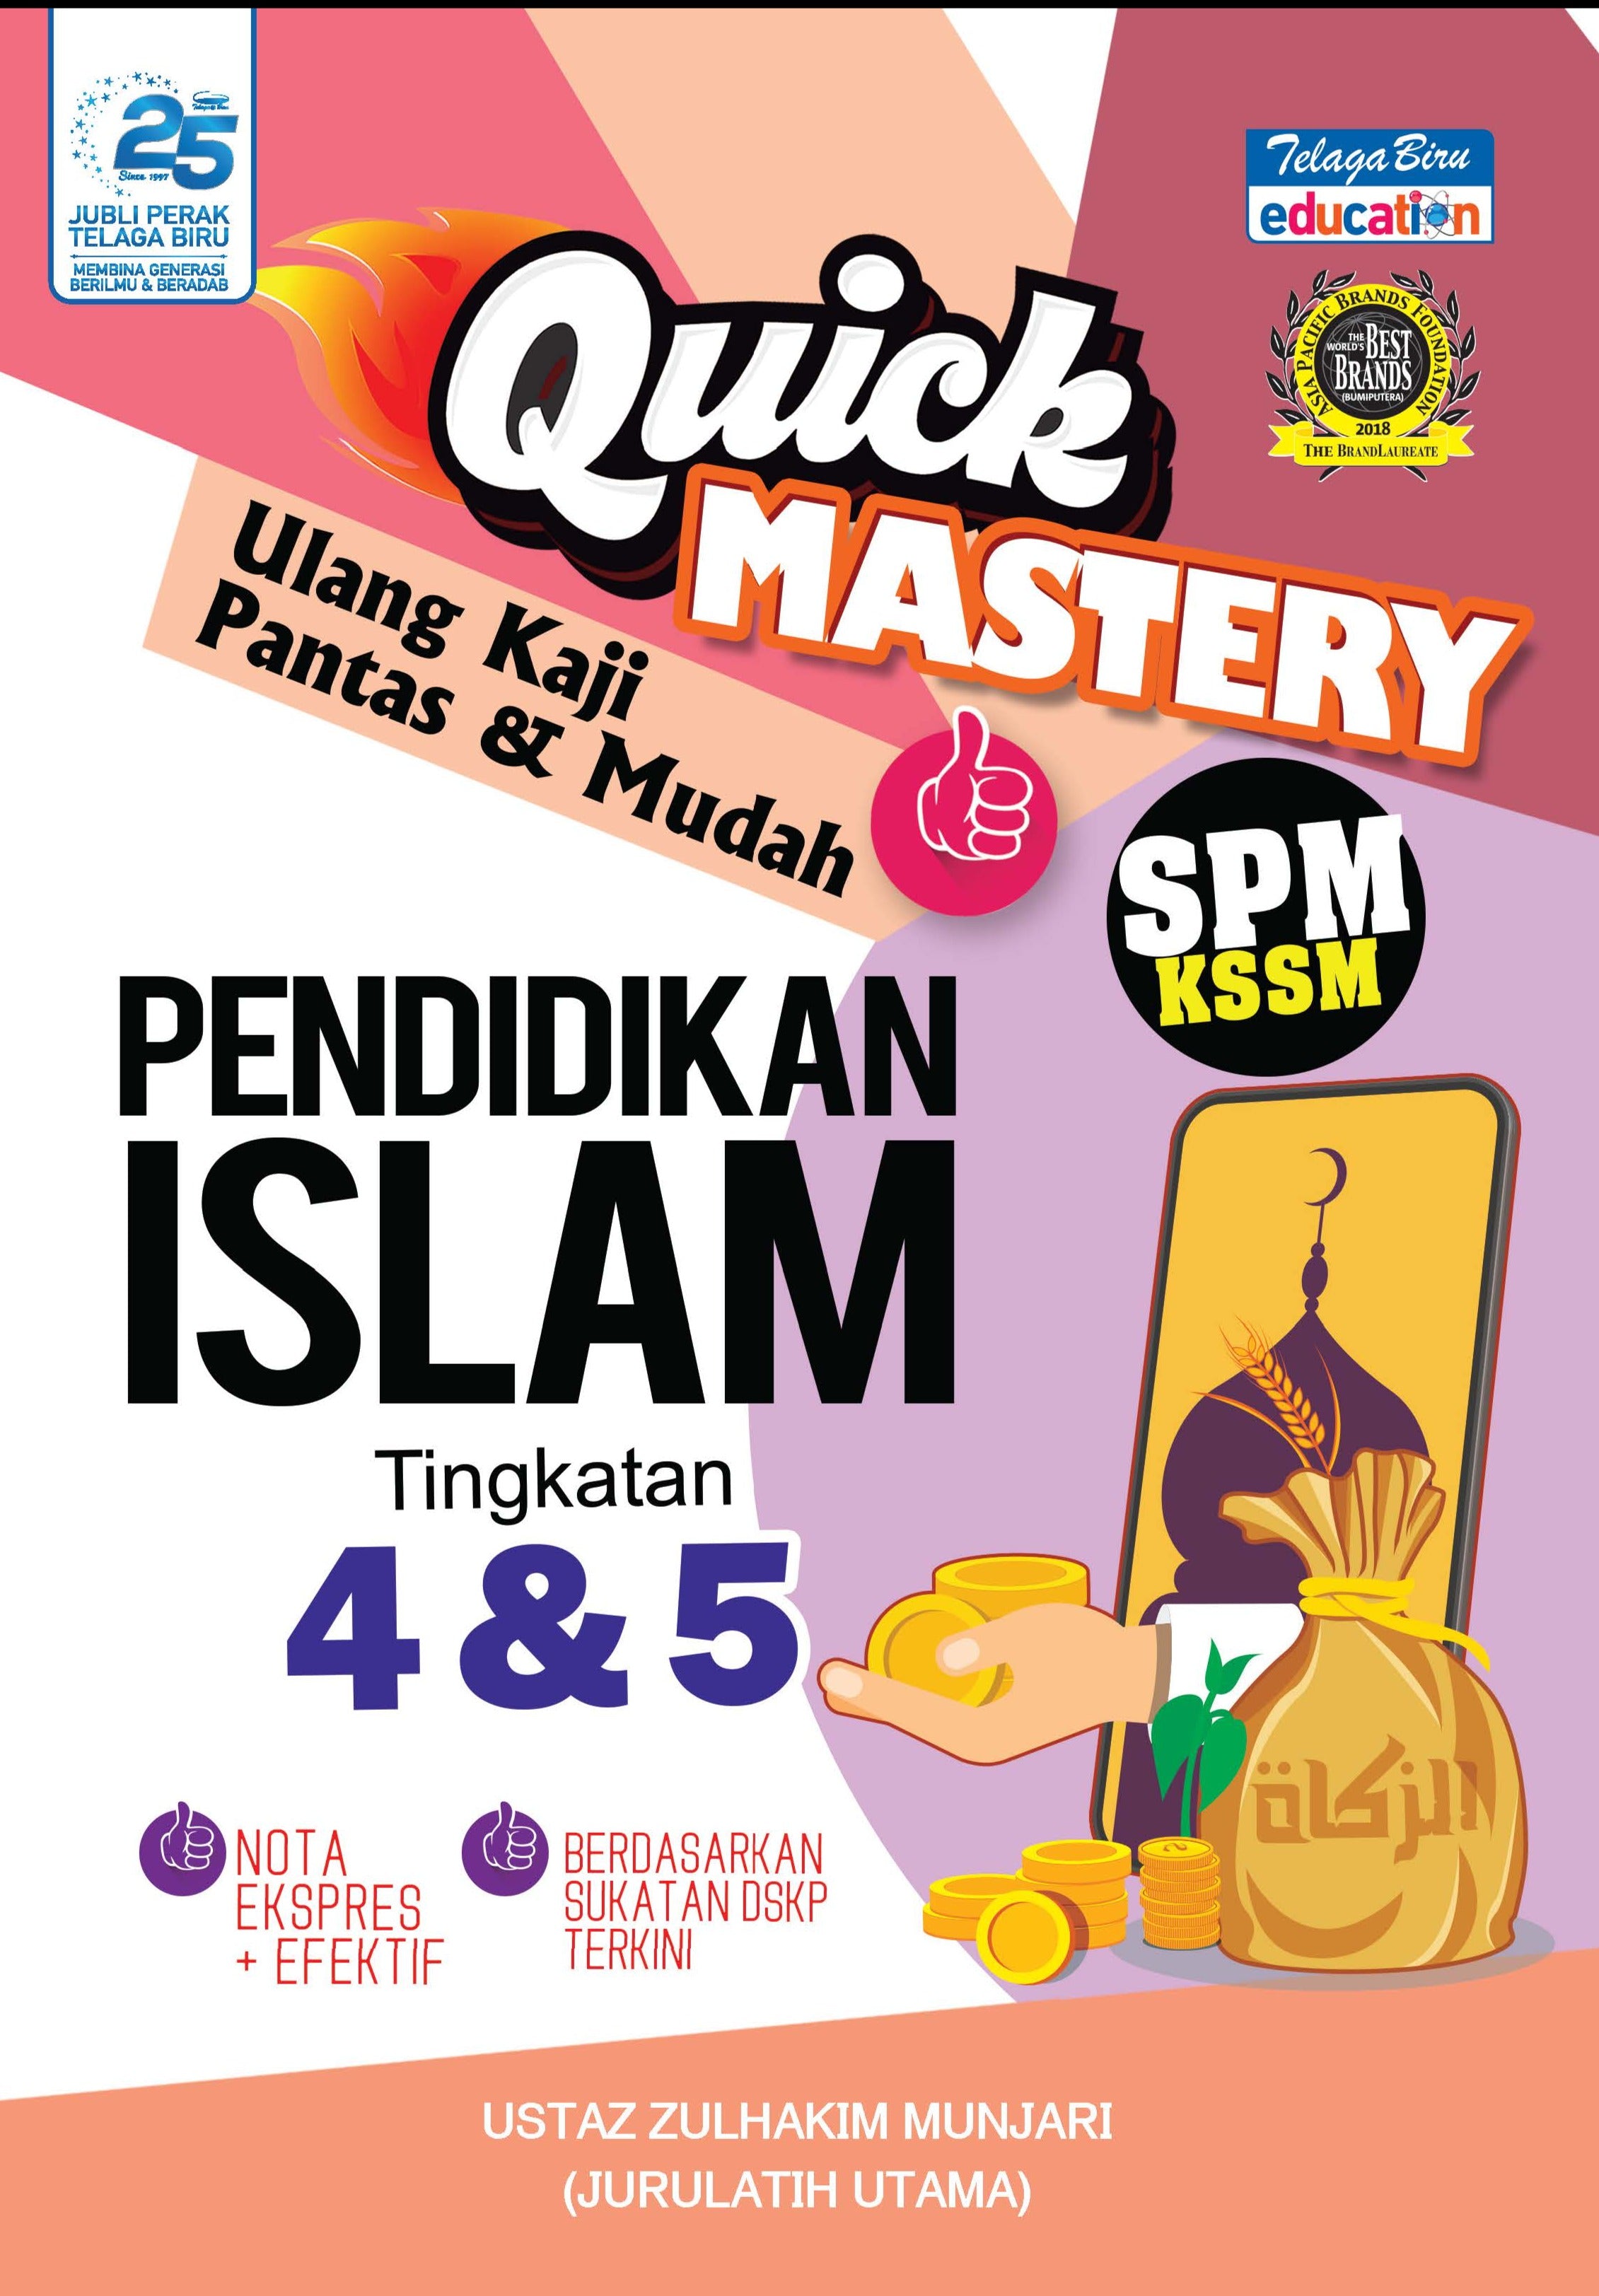 Quick Mastery Modul Soalan Pendidikan Islam Tingkatan 4 & 5 - (TBBS1299)